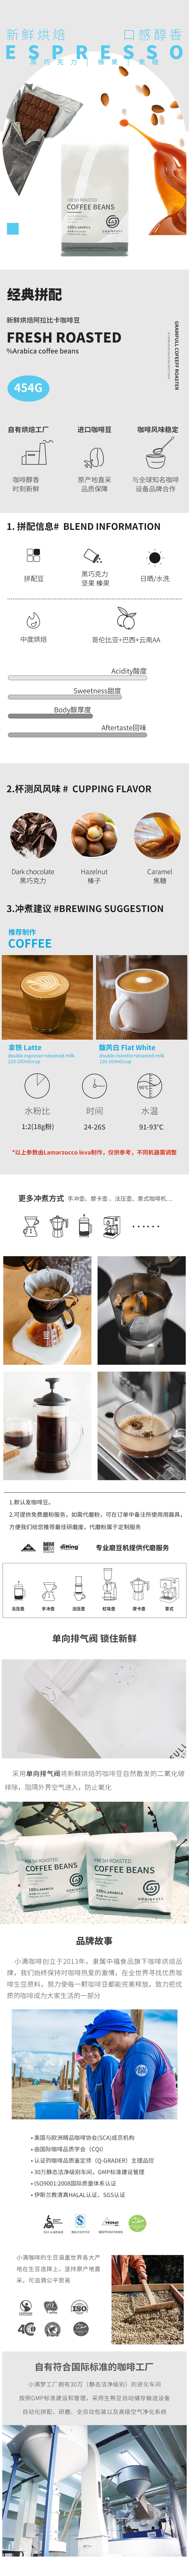 【经典意式拼配】咖啡豆454g